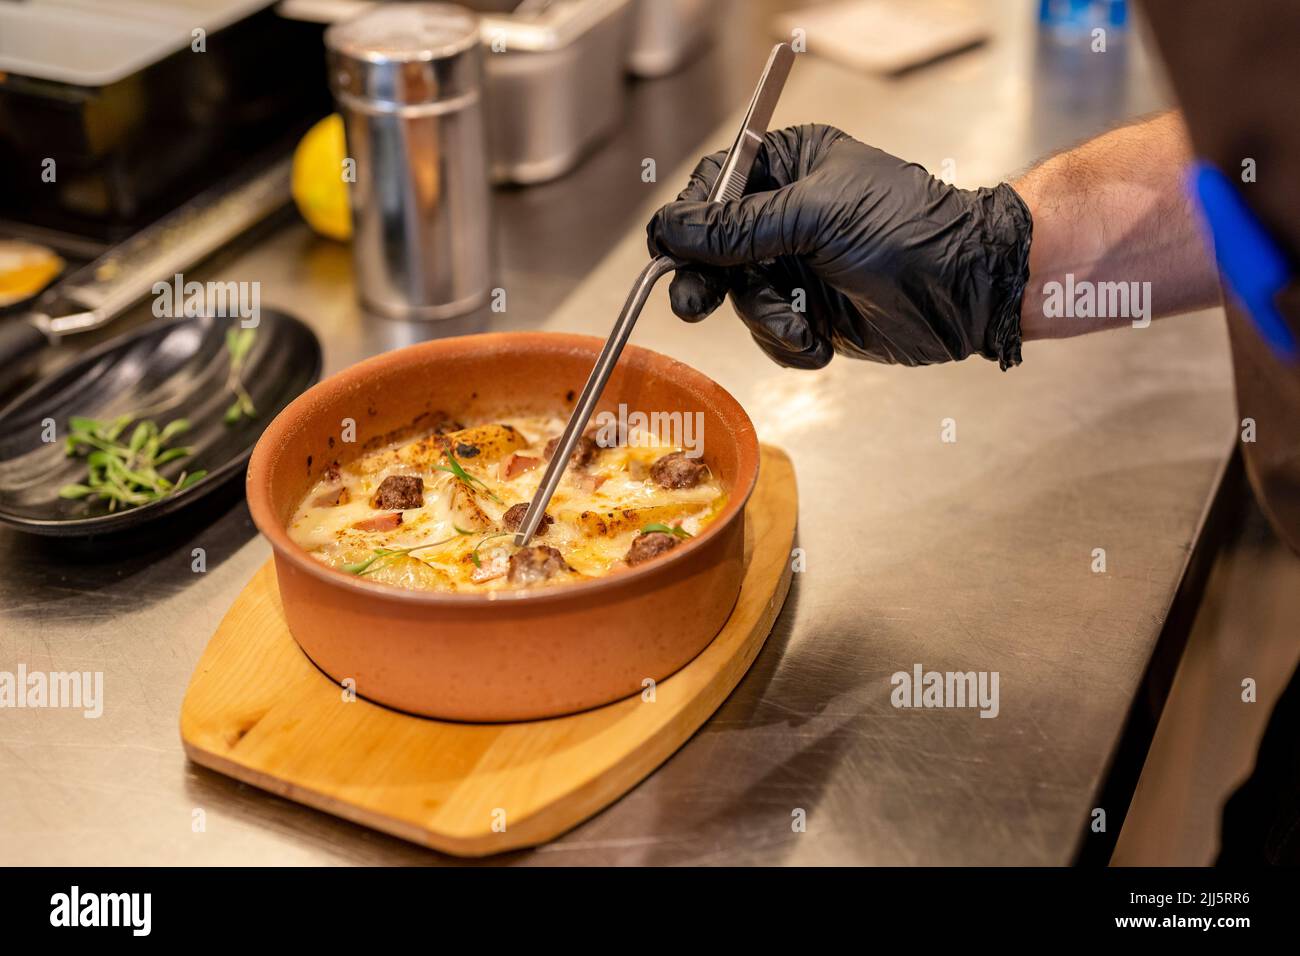 Hand of chef garnishing food with tweezers Stock Photo